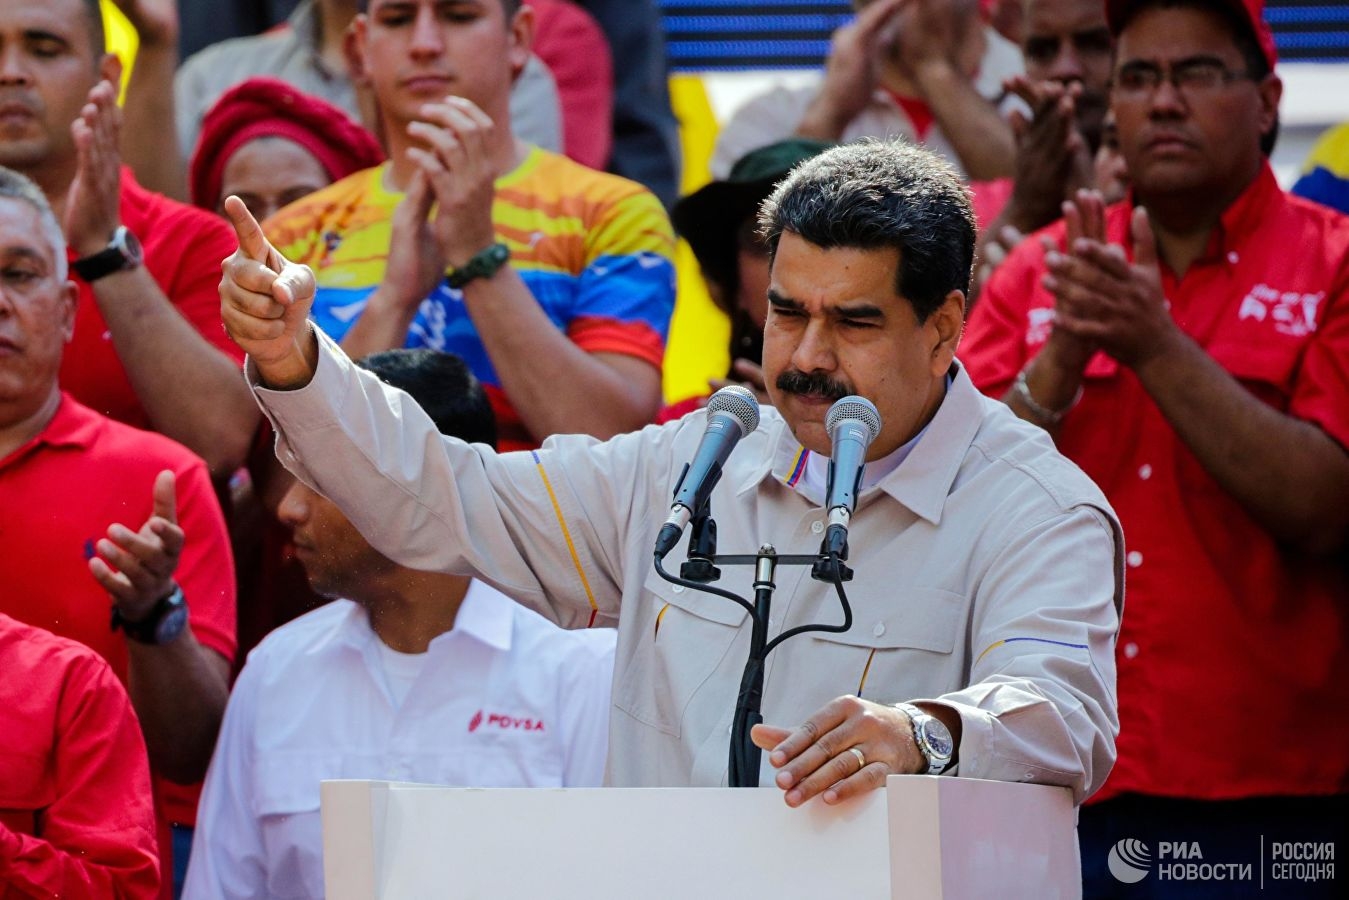 Tổng thống Maduro kêu gọi tránh bẫy khiêu khích